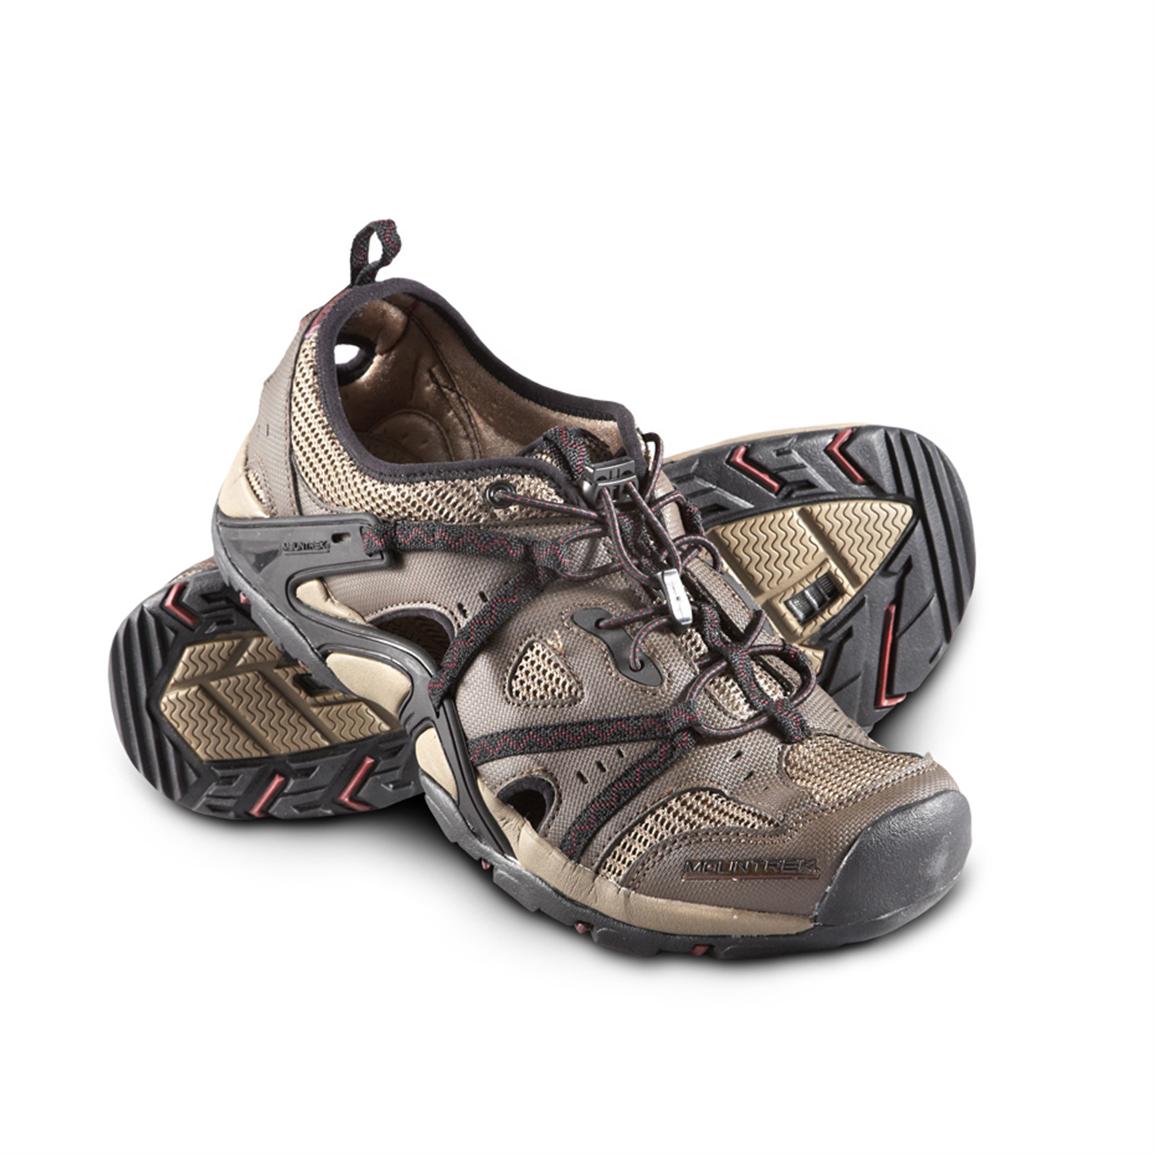 Men's Mountrek® Chesapeake Water Shoes - 303544, Boat & Water Shoes at ...